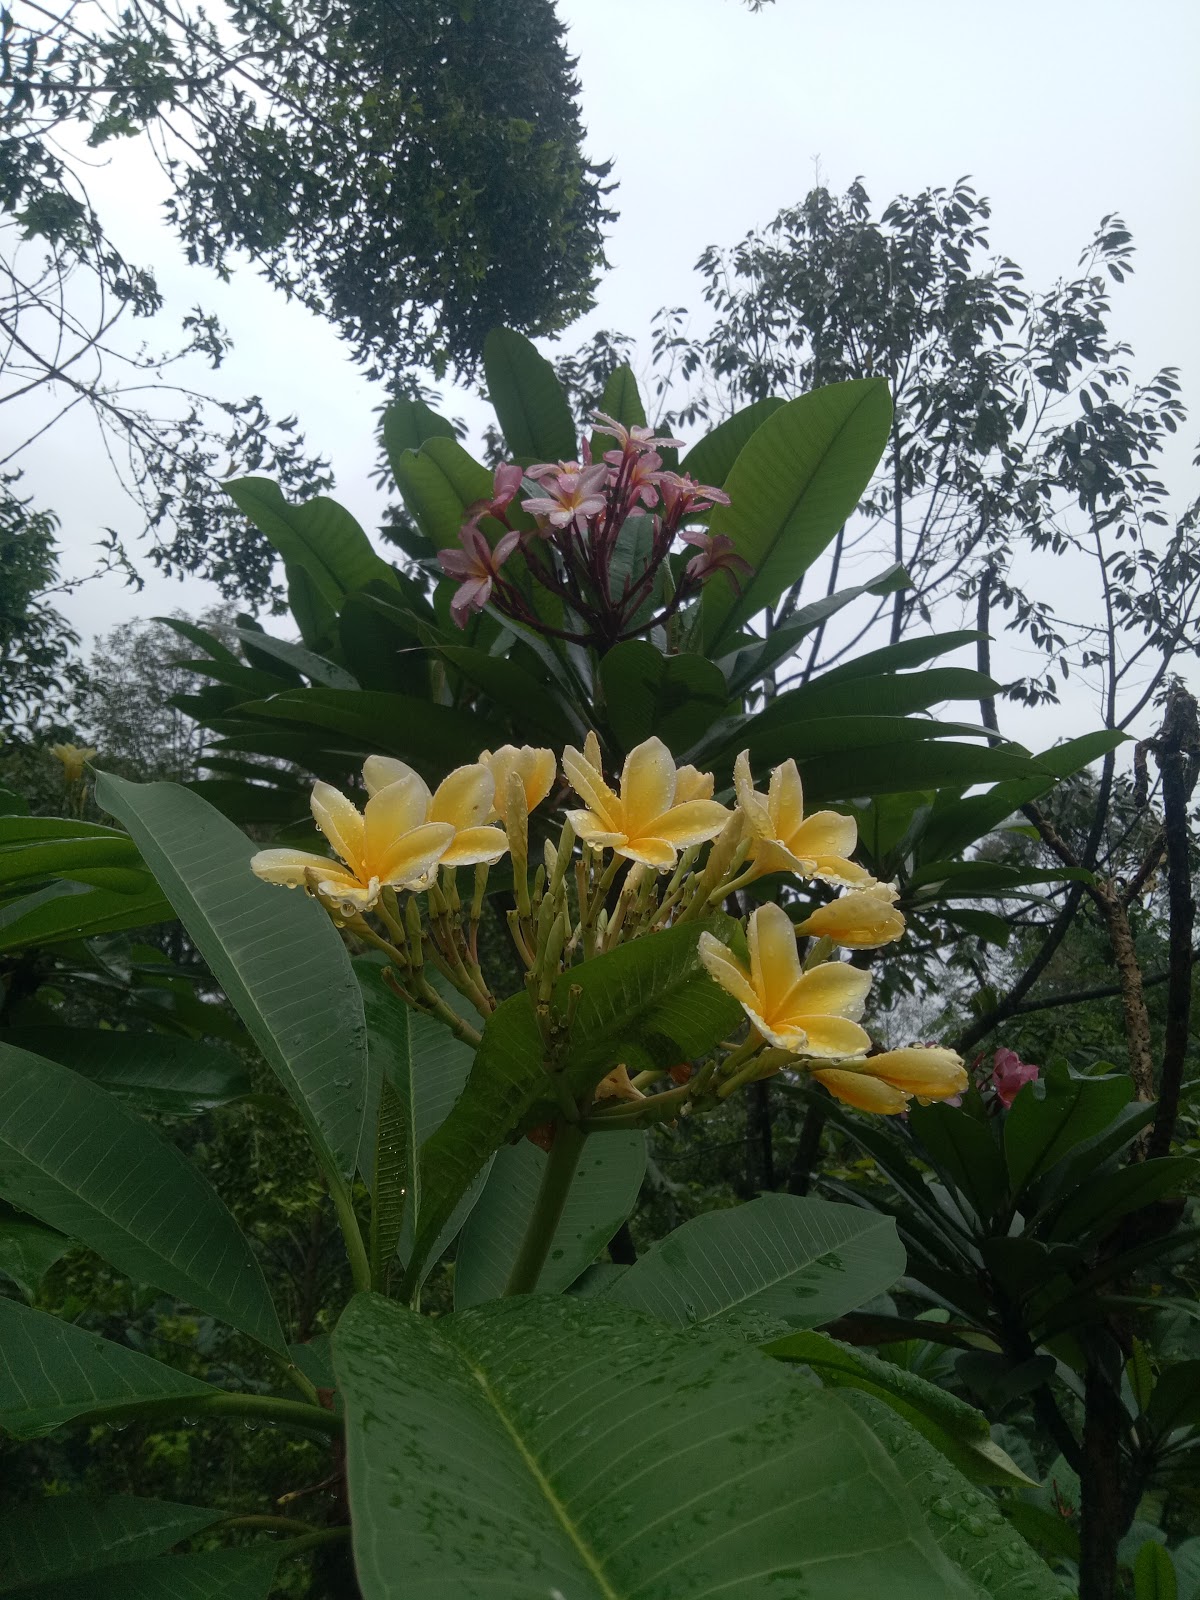 Harga tanaman Kamboja bali bunga warna kuning tinggi 1 sampai 1,5 meter